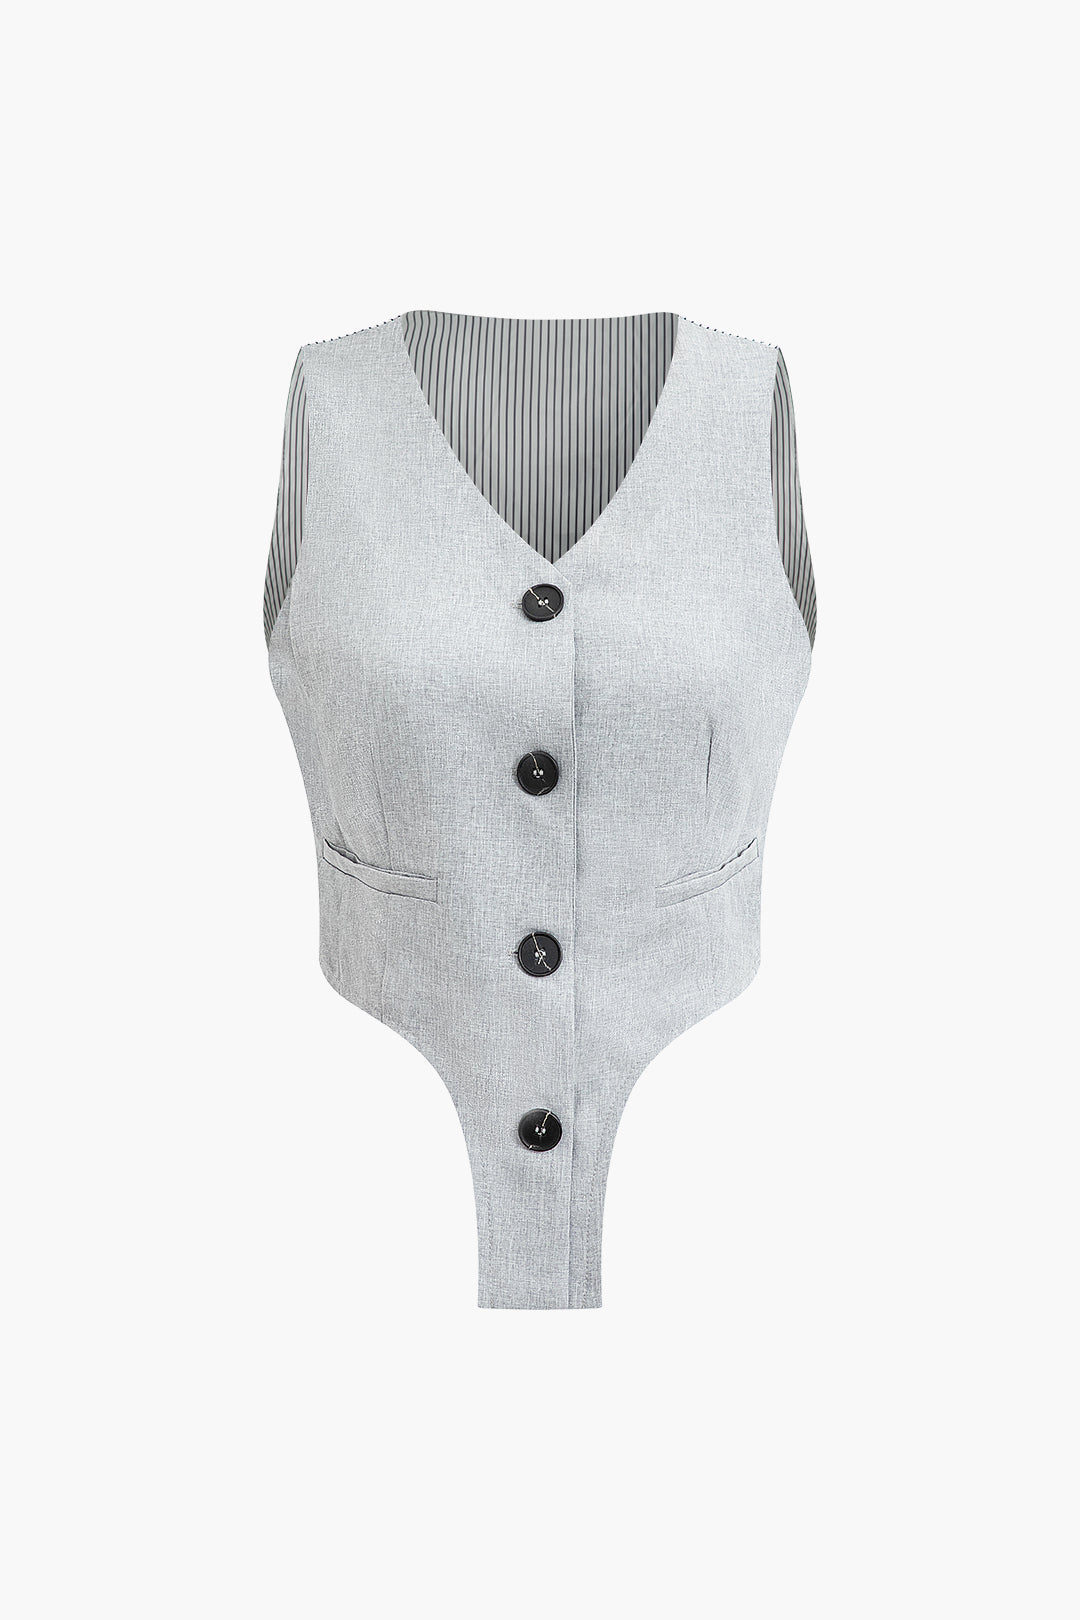 Men's Custom Vests, Tailored Vests Online $99 - Hockerty